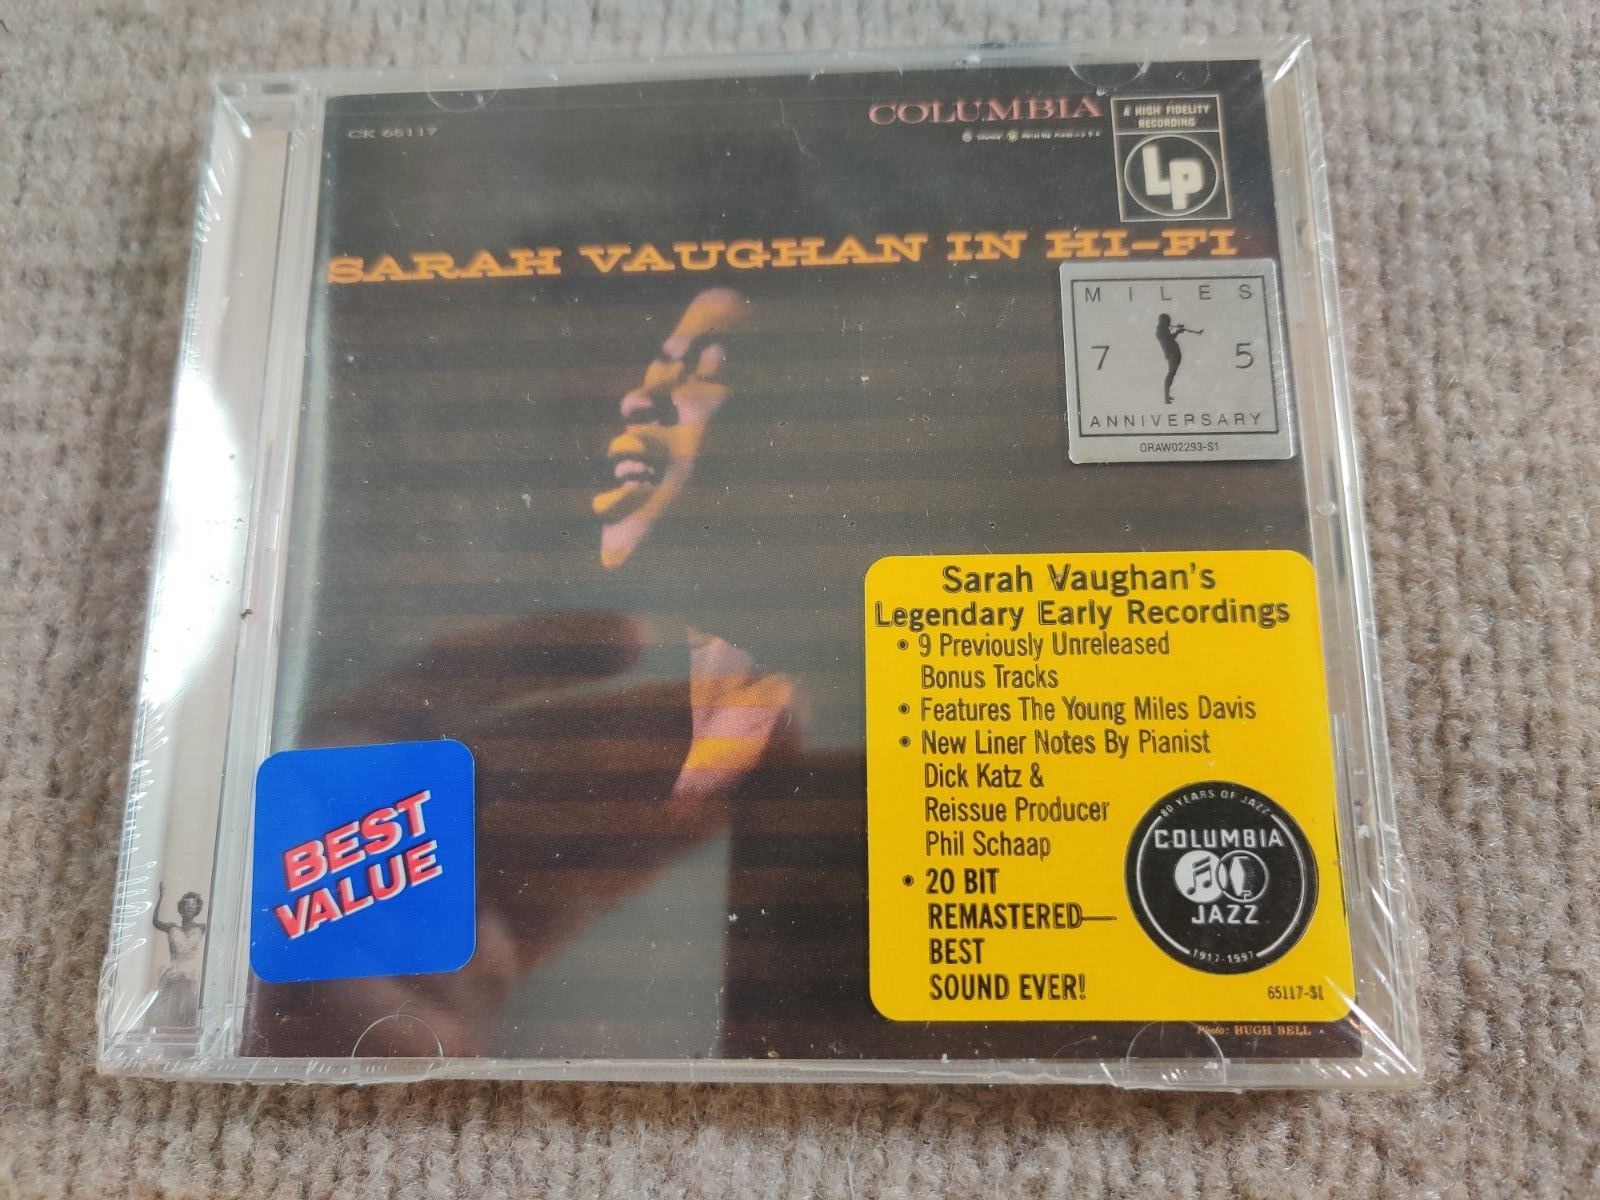 Sarah Vaughan in Hi-Fi Legendary Early Recordings CD Columbia Legacy